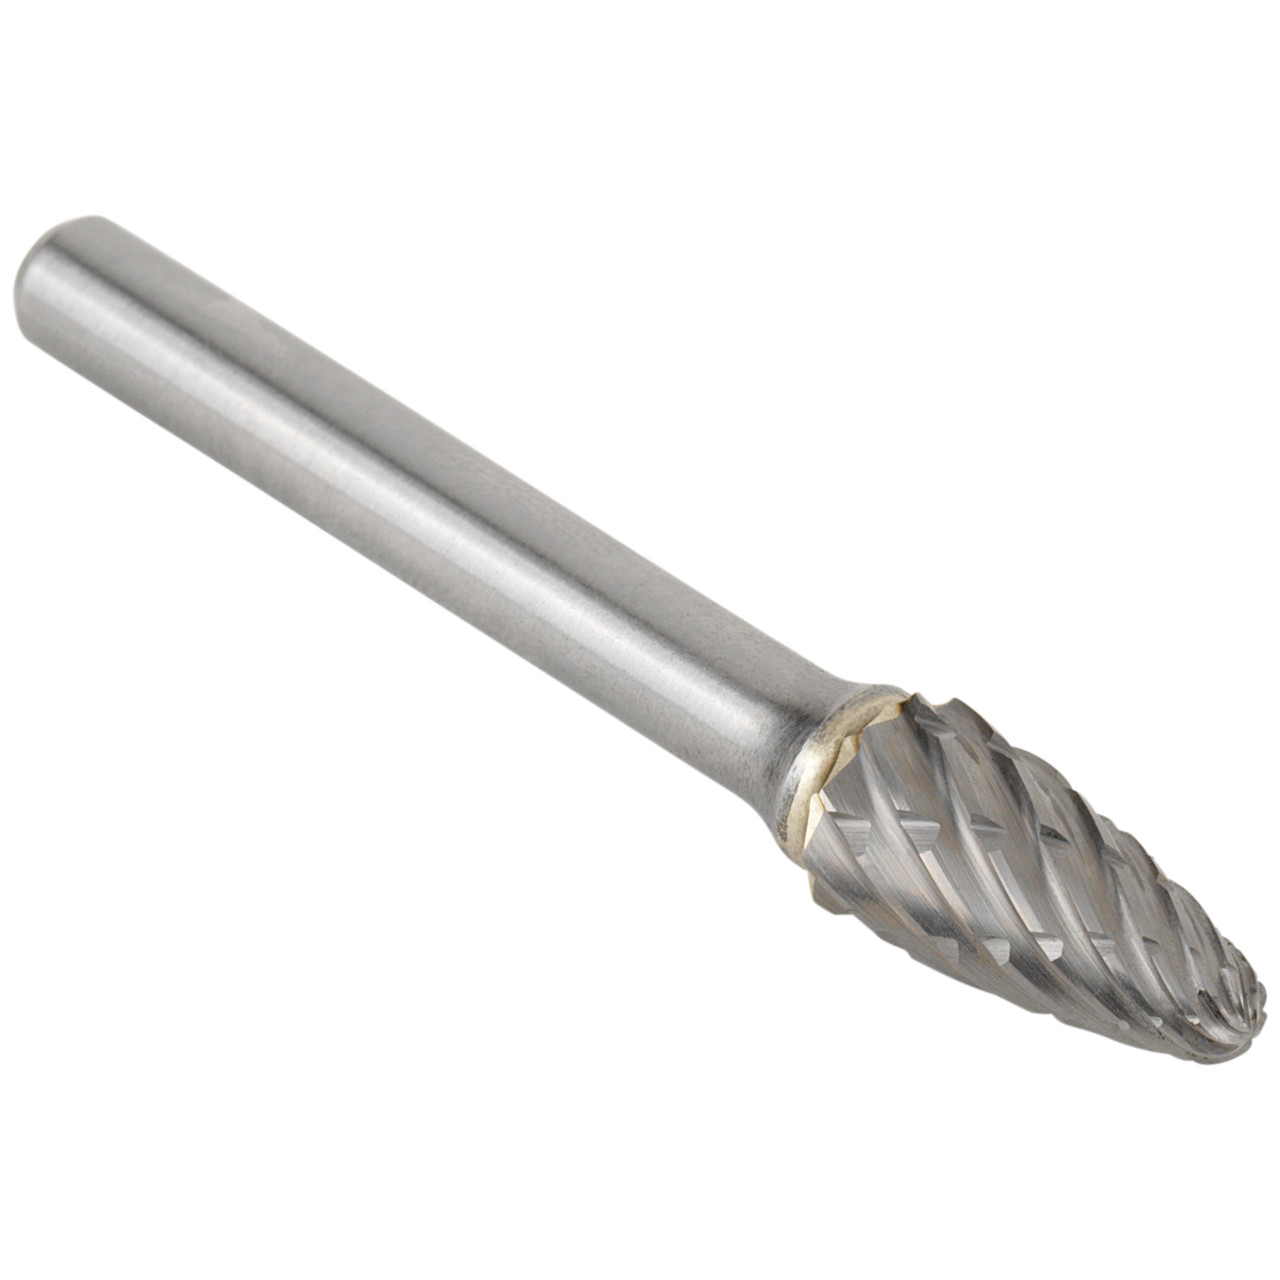 Tyrolit Hardmetalen frees DxT-SxL 13x25-6x70 Voor staal, vorm: 52RBF - boom, Art. 34213601